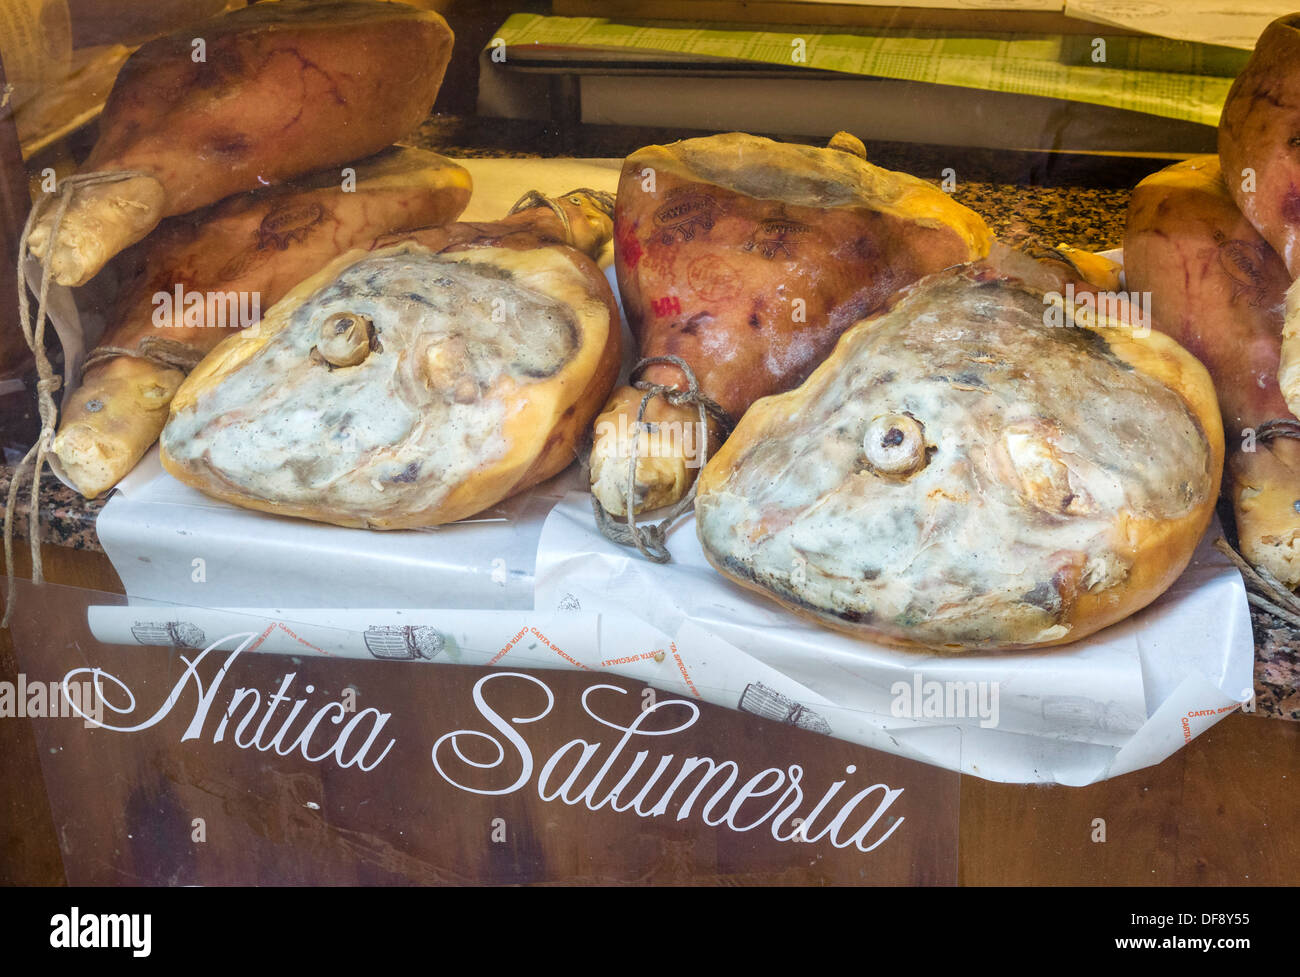 Whole parma hams in a traditional salumeria in the city centre, Reggio Emilia, Emilia Romagna, Italy Stock Photo